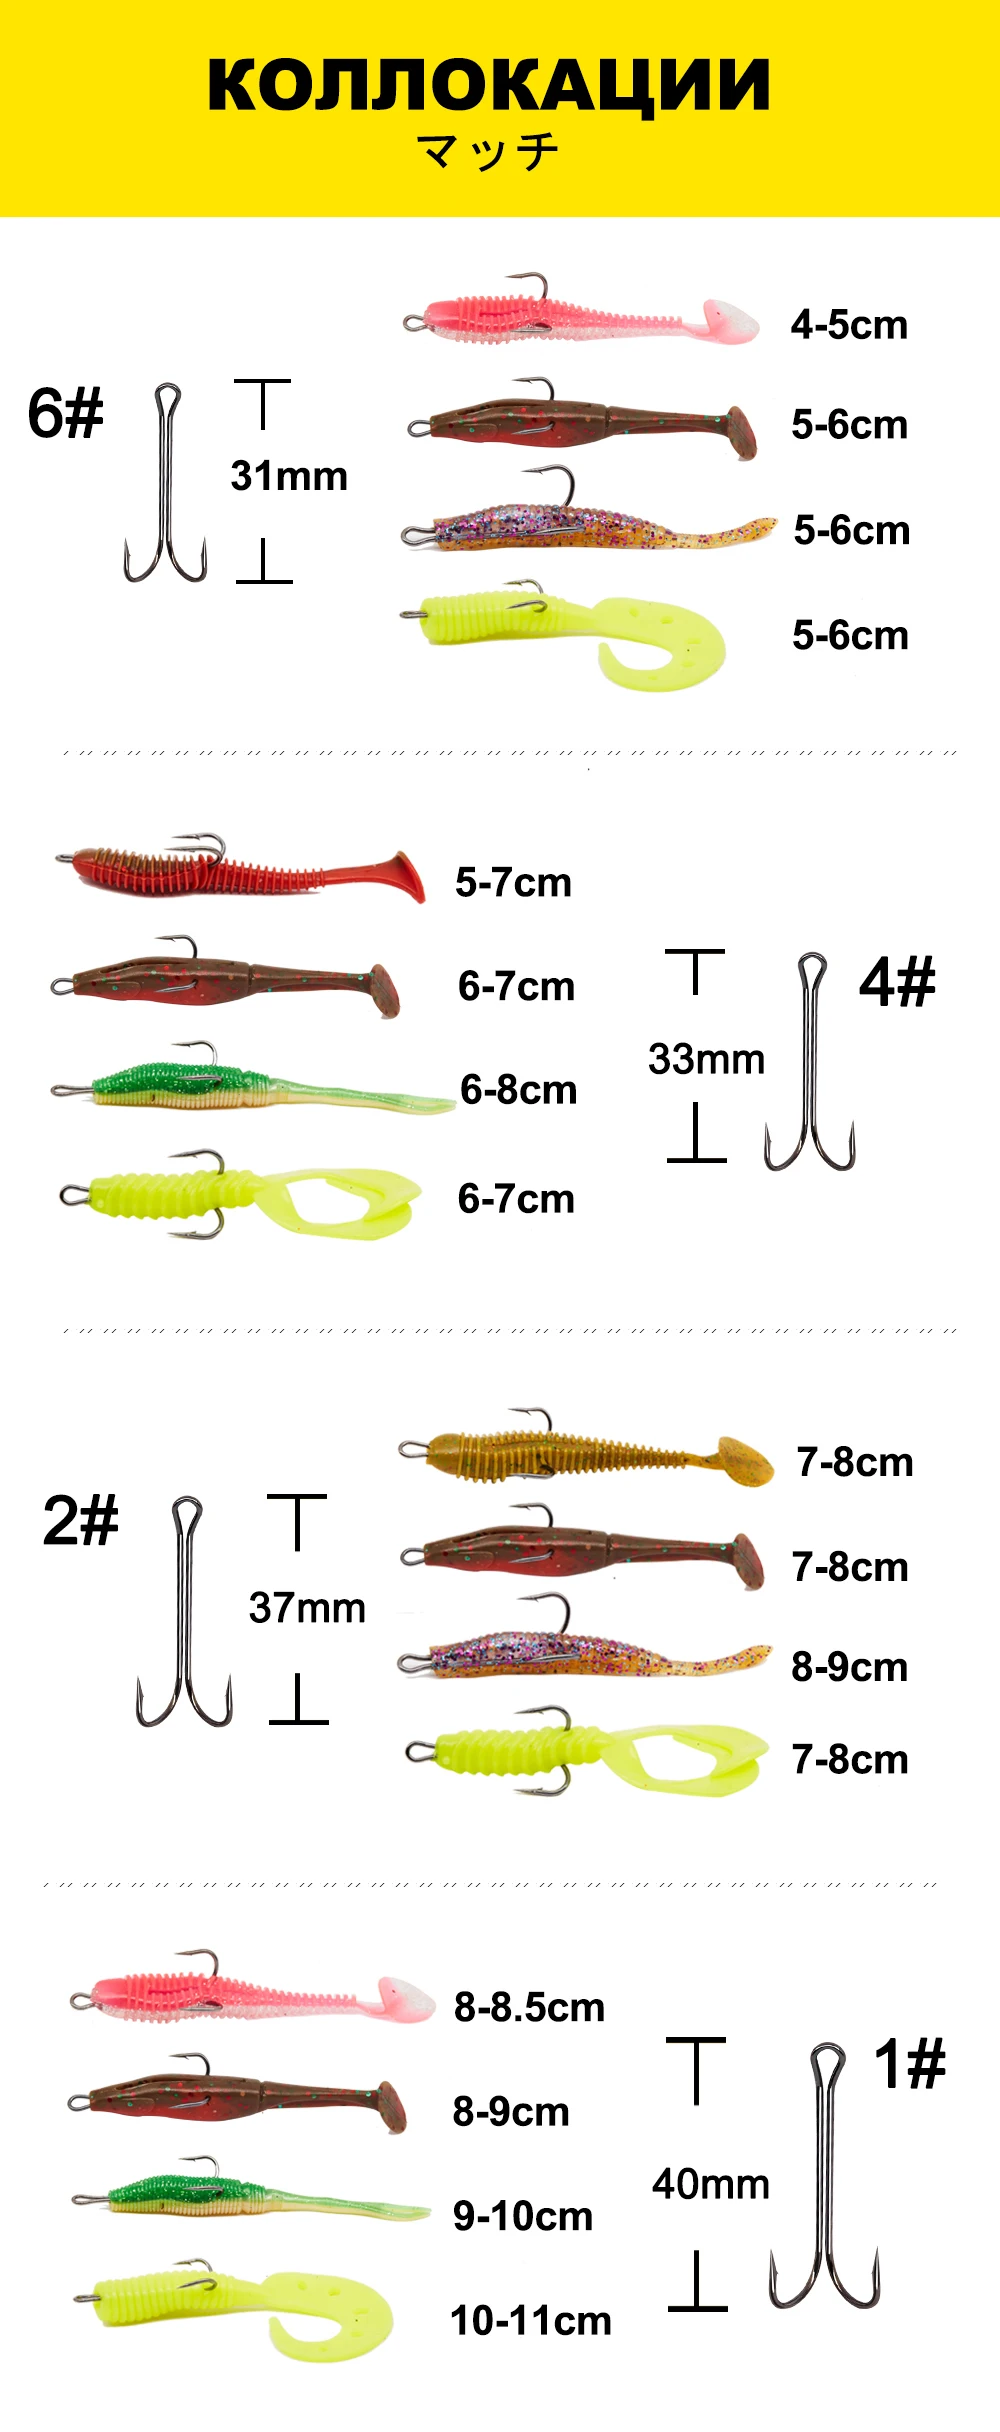 Новые рыболовные крючки с двойным крюком, длинные, из высокоуглеродистой стали, рыболовные снасти различных размеров, оснащенные мягкой приманкой